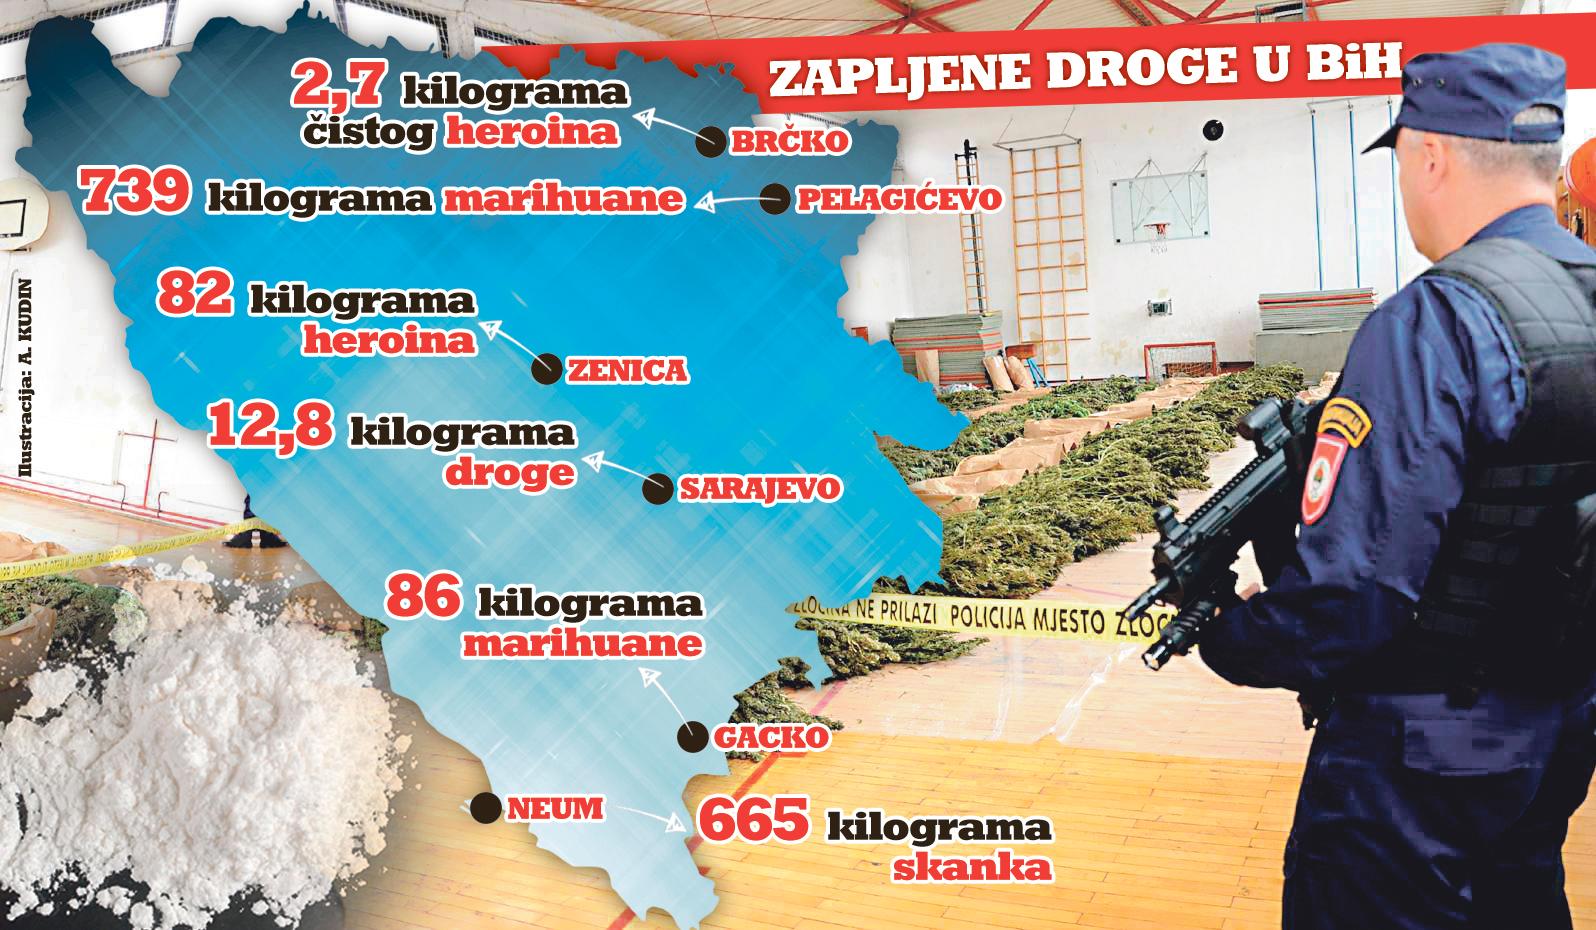 Balkanska ruta krijumčarenja droge ponovo aktivna